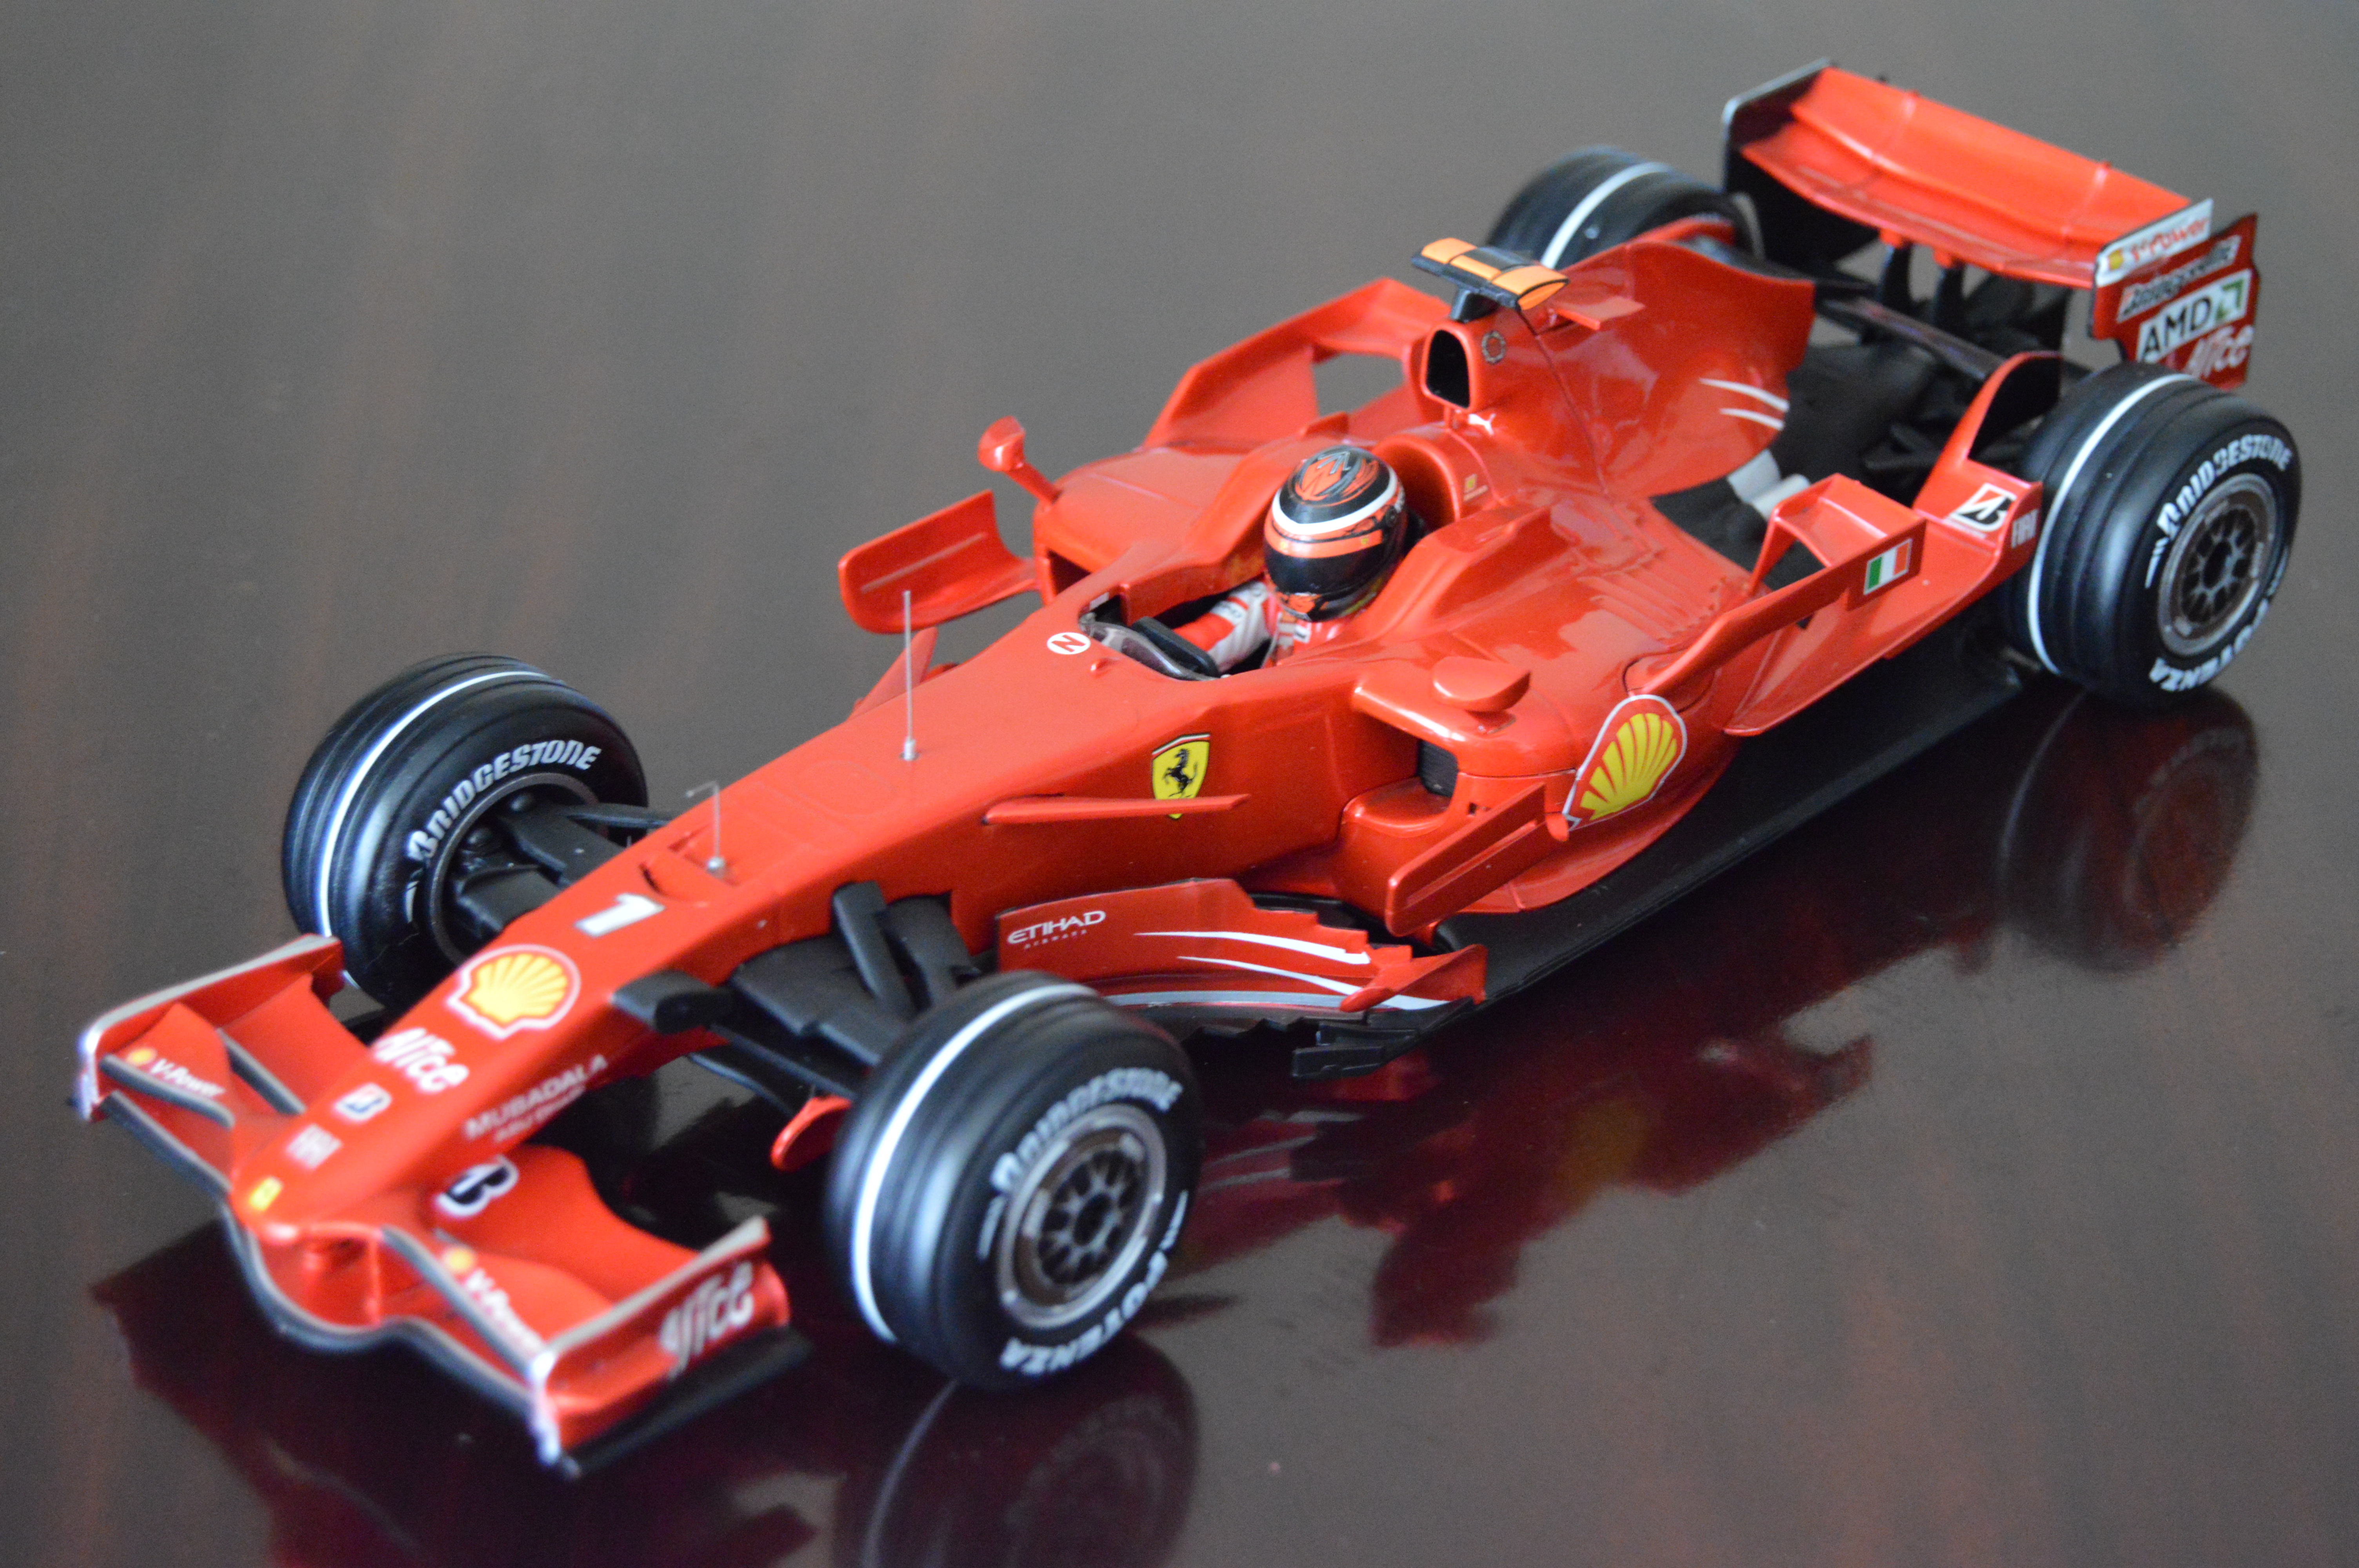 2008 Ferrari F2008 - Kimi Raikkonen | Model Racing Cars | hobbyDB